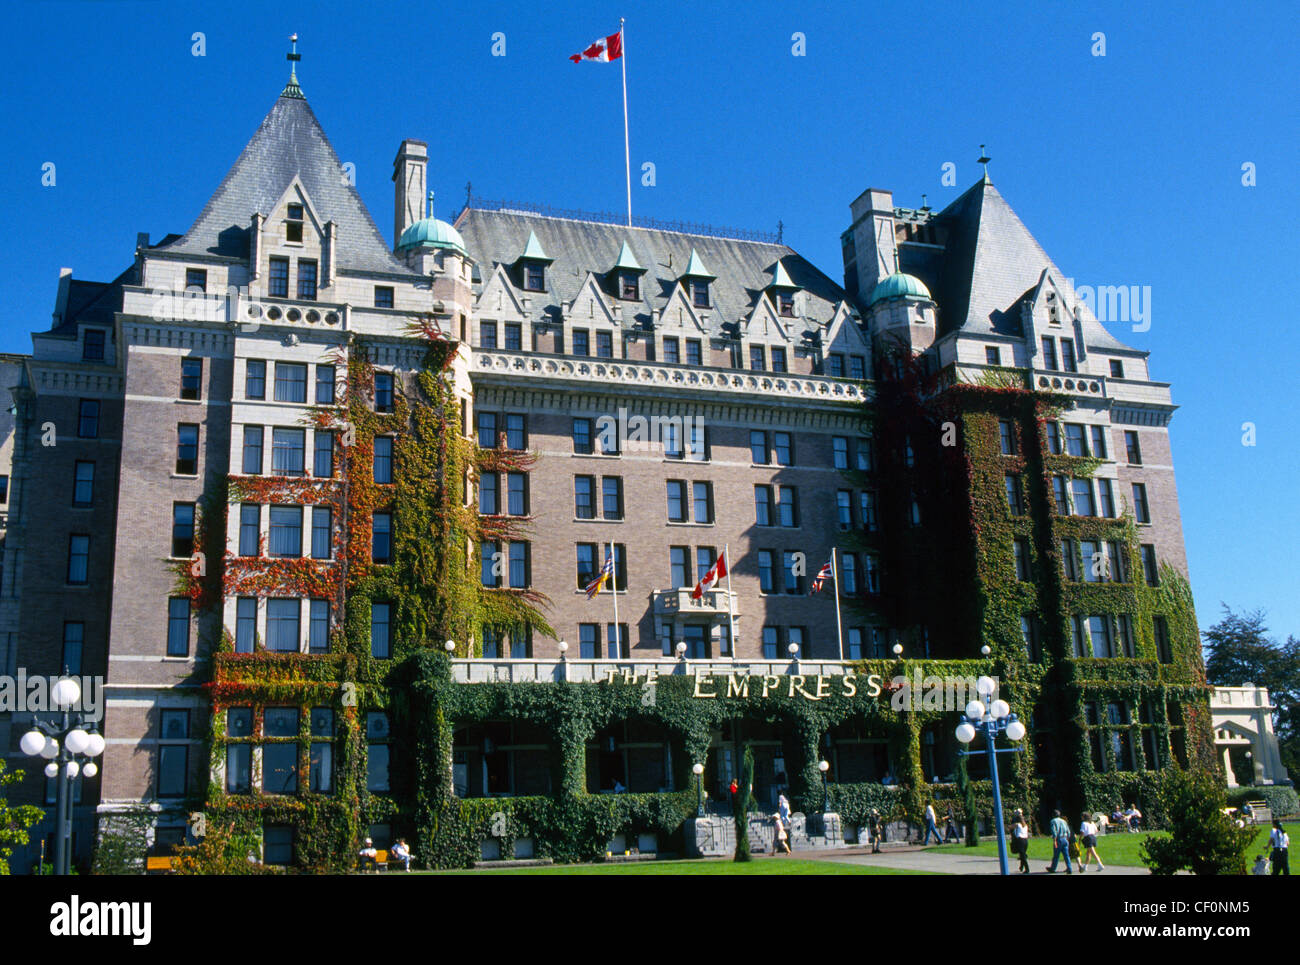 Das regal Empress Hotel ist ein Wahrzeichen Attraktion seit 1908 auf Vancouver Island in Victoria, der Hauptstadt von Britisch Kolumbien, Kanada gewesen. Stockfoto